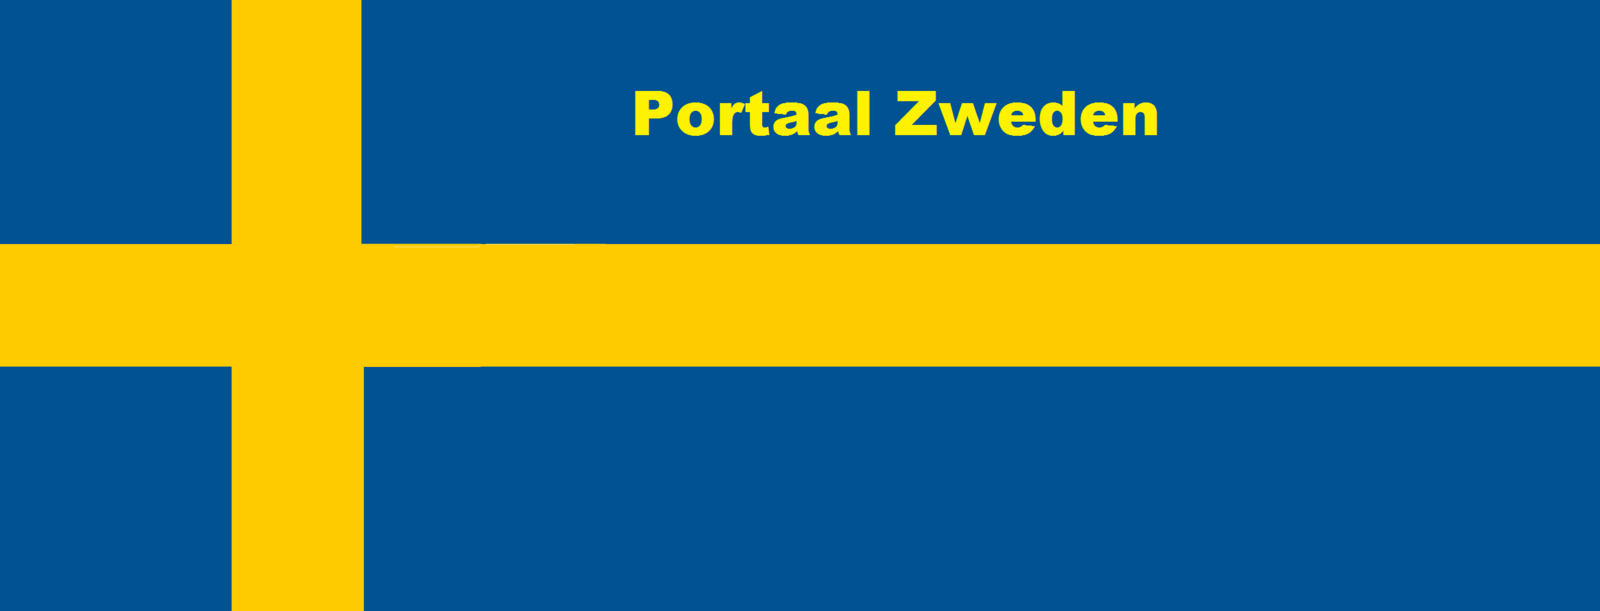 PortaalZweden.png